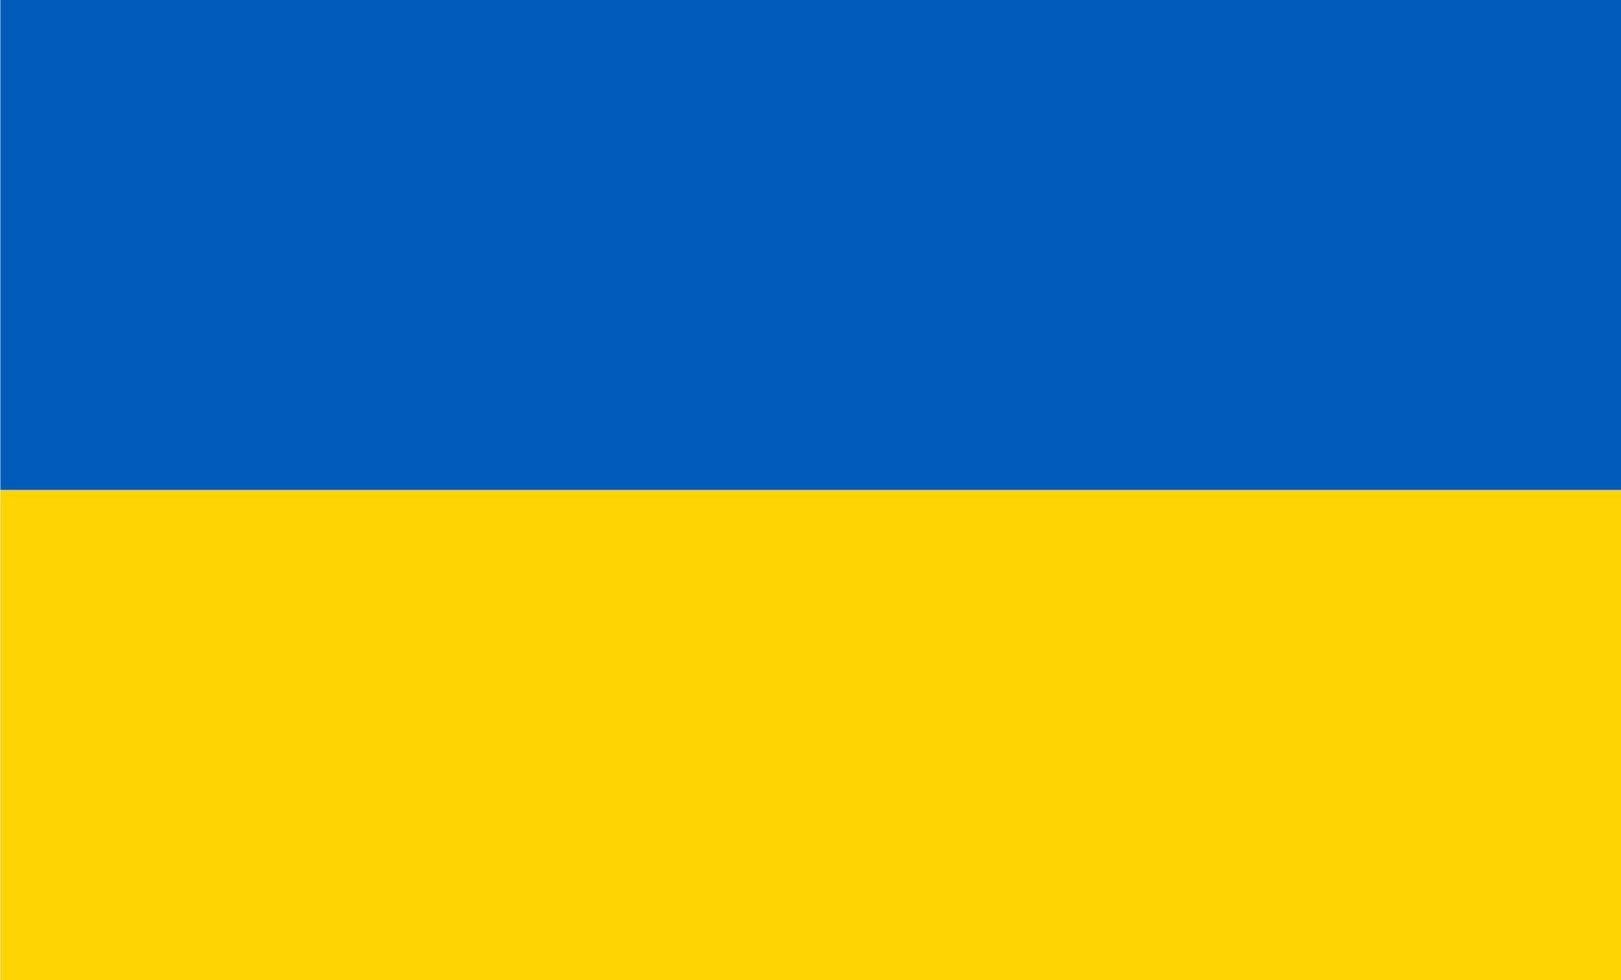 drapeau de l'ukraine, drapeau national de l'ukraine vecteur de haute qualité